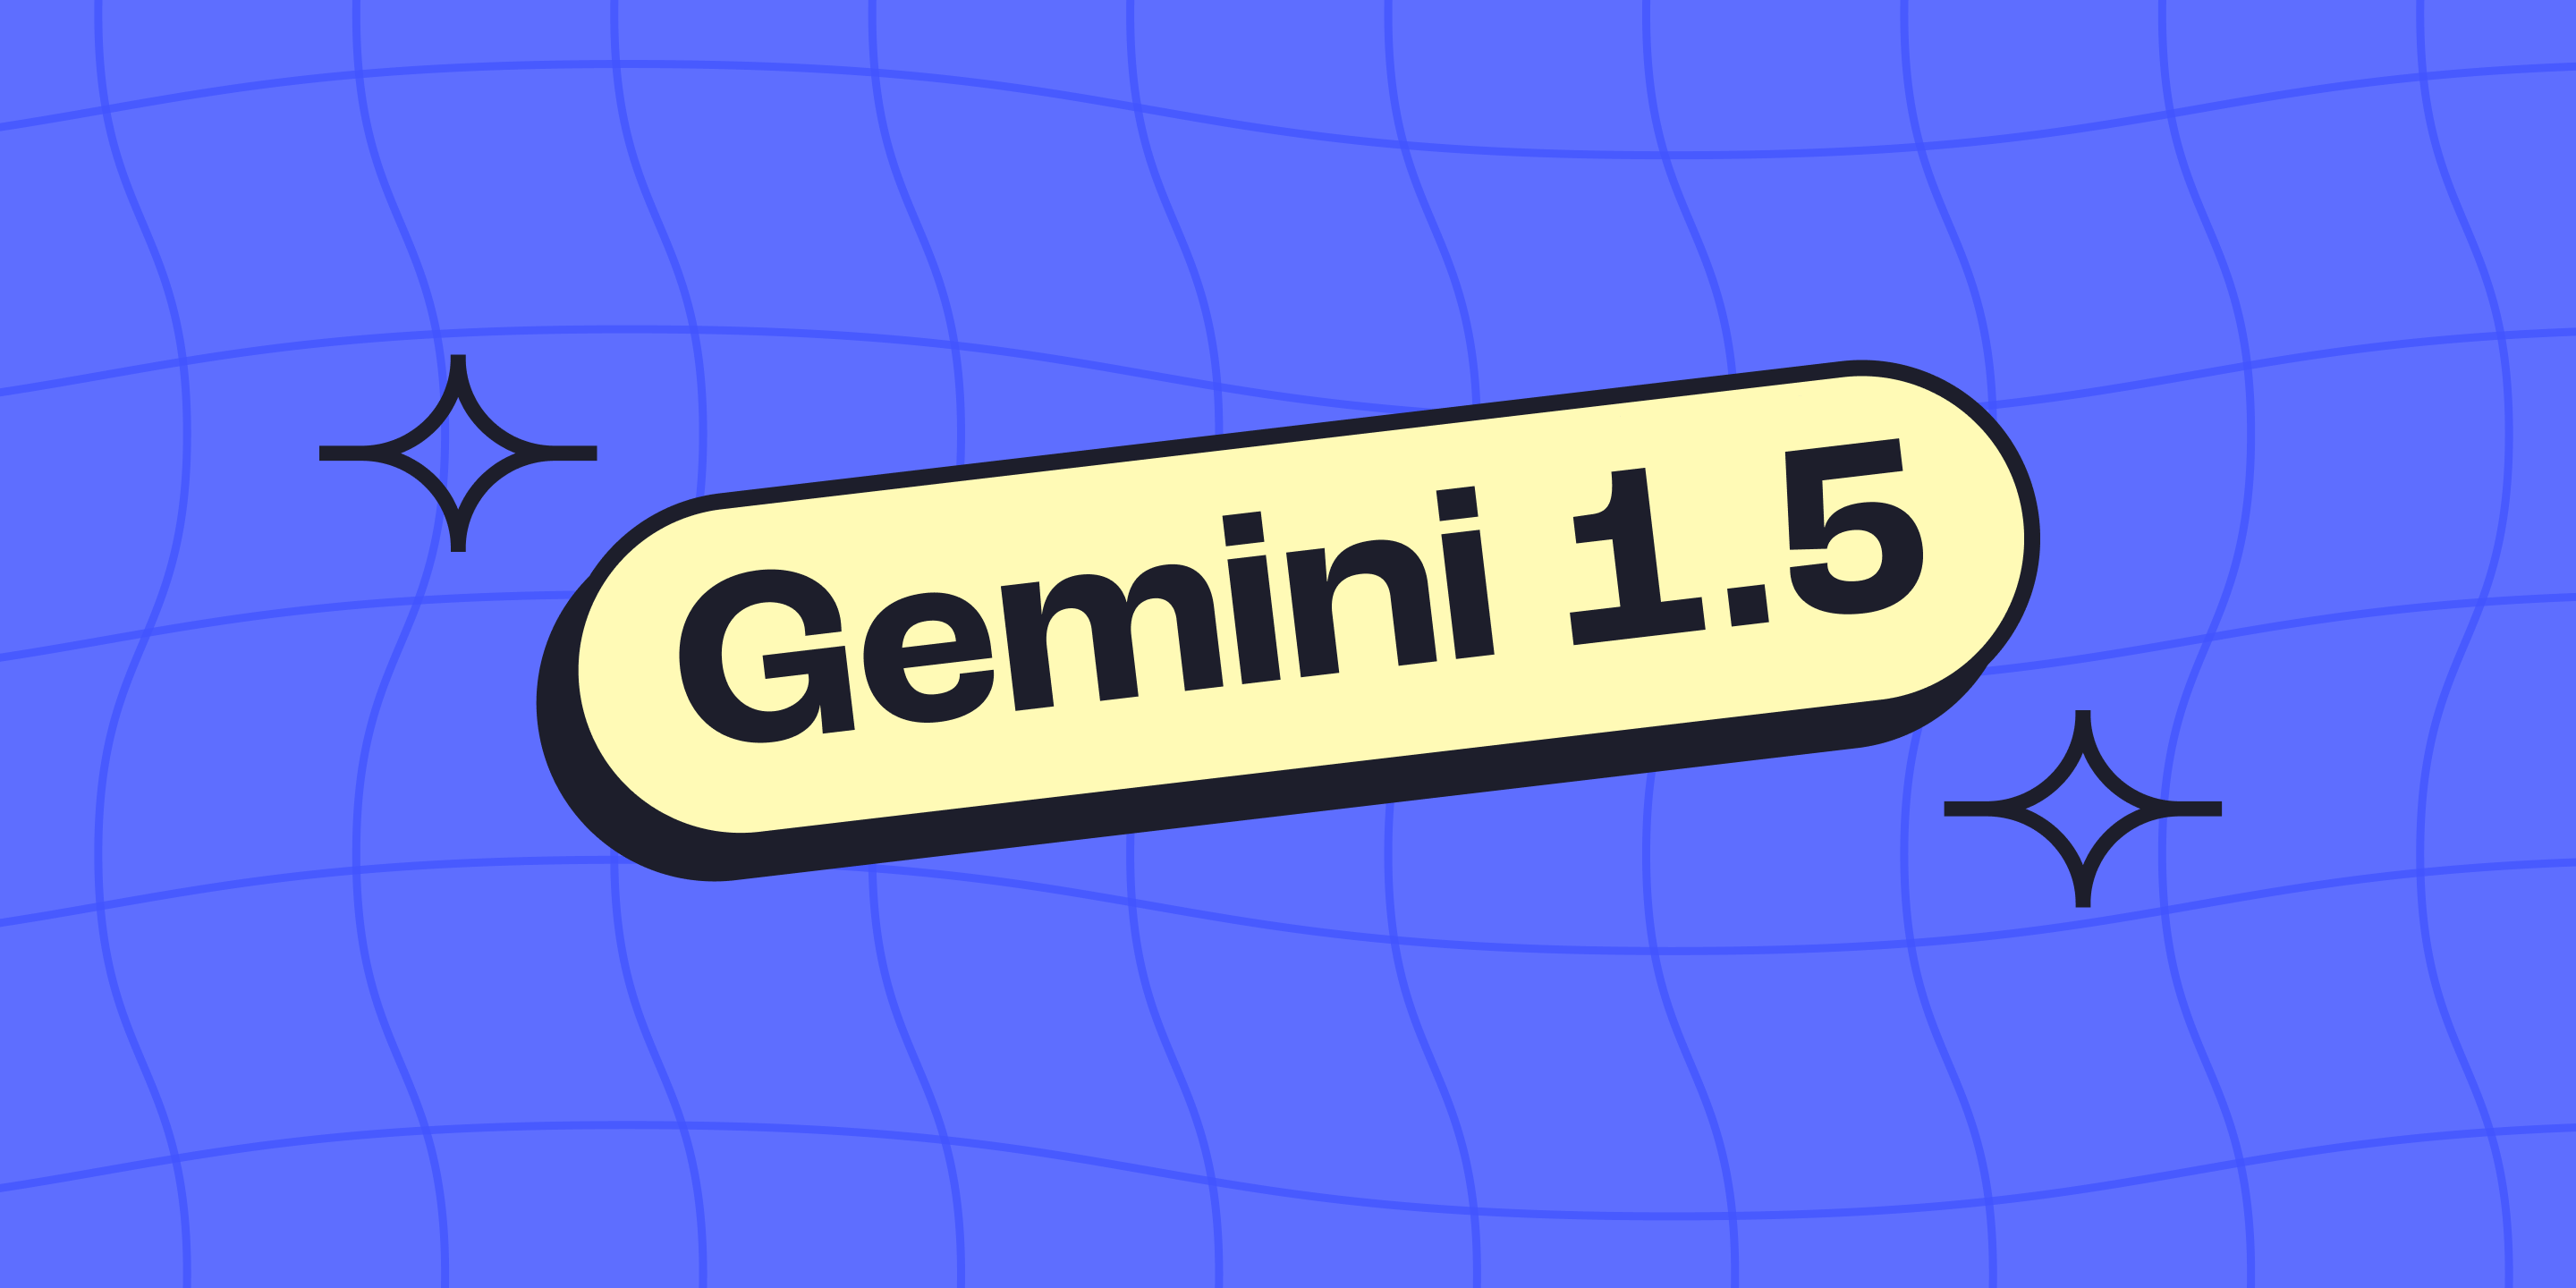 Gemini 1.5 cover